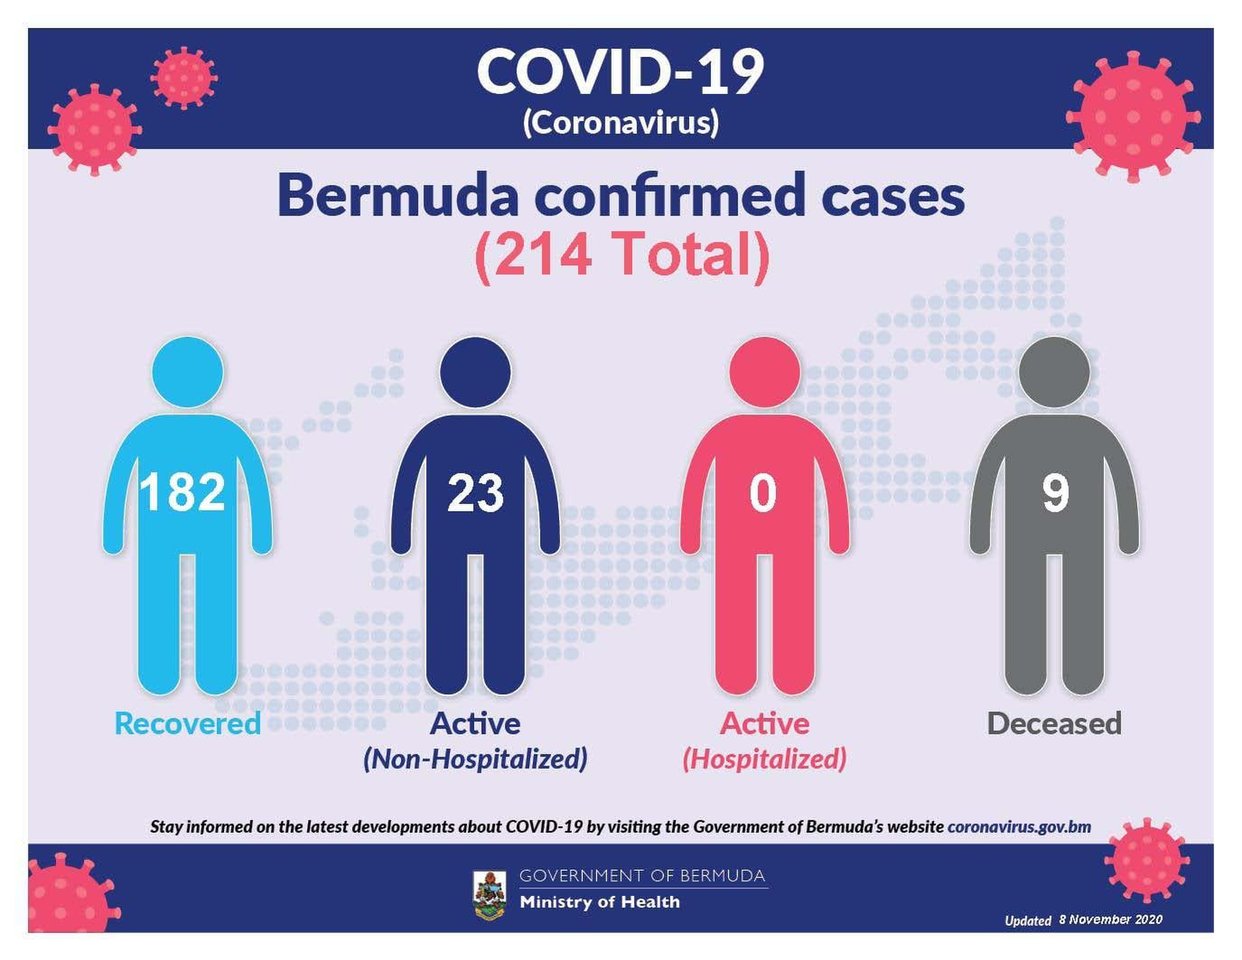 5 new COVID-19 cases reported in Bermuda, 9 November